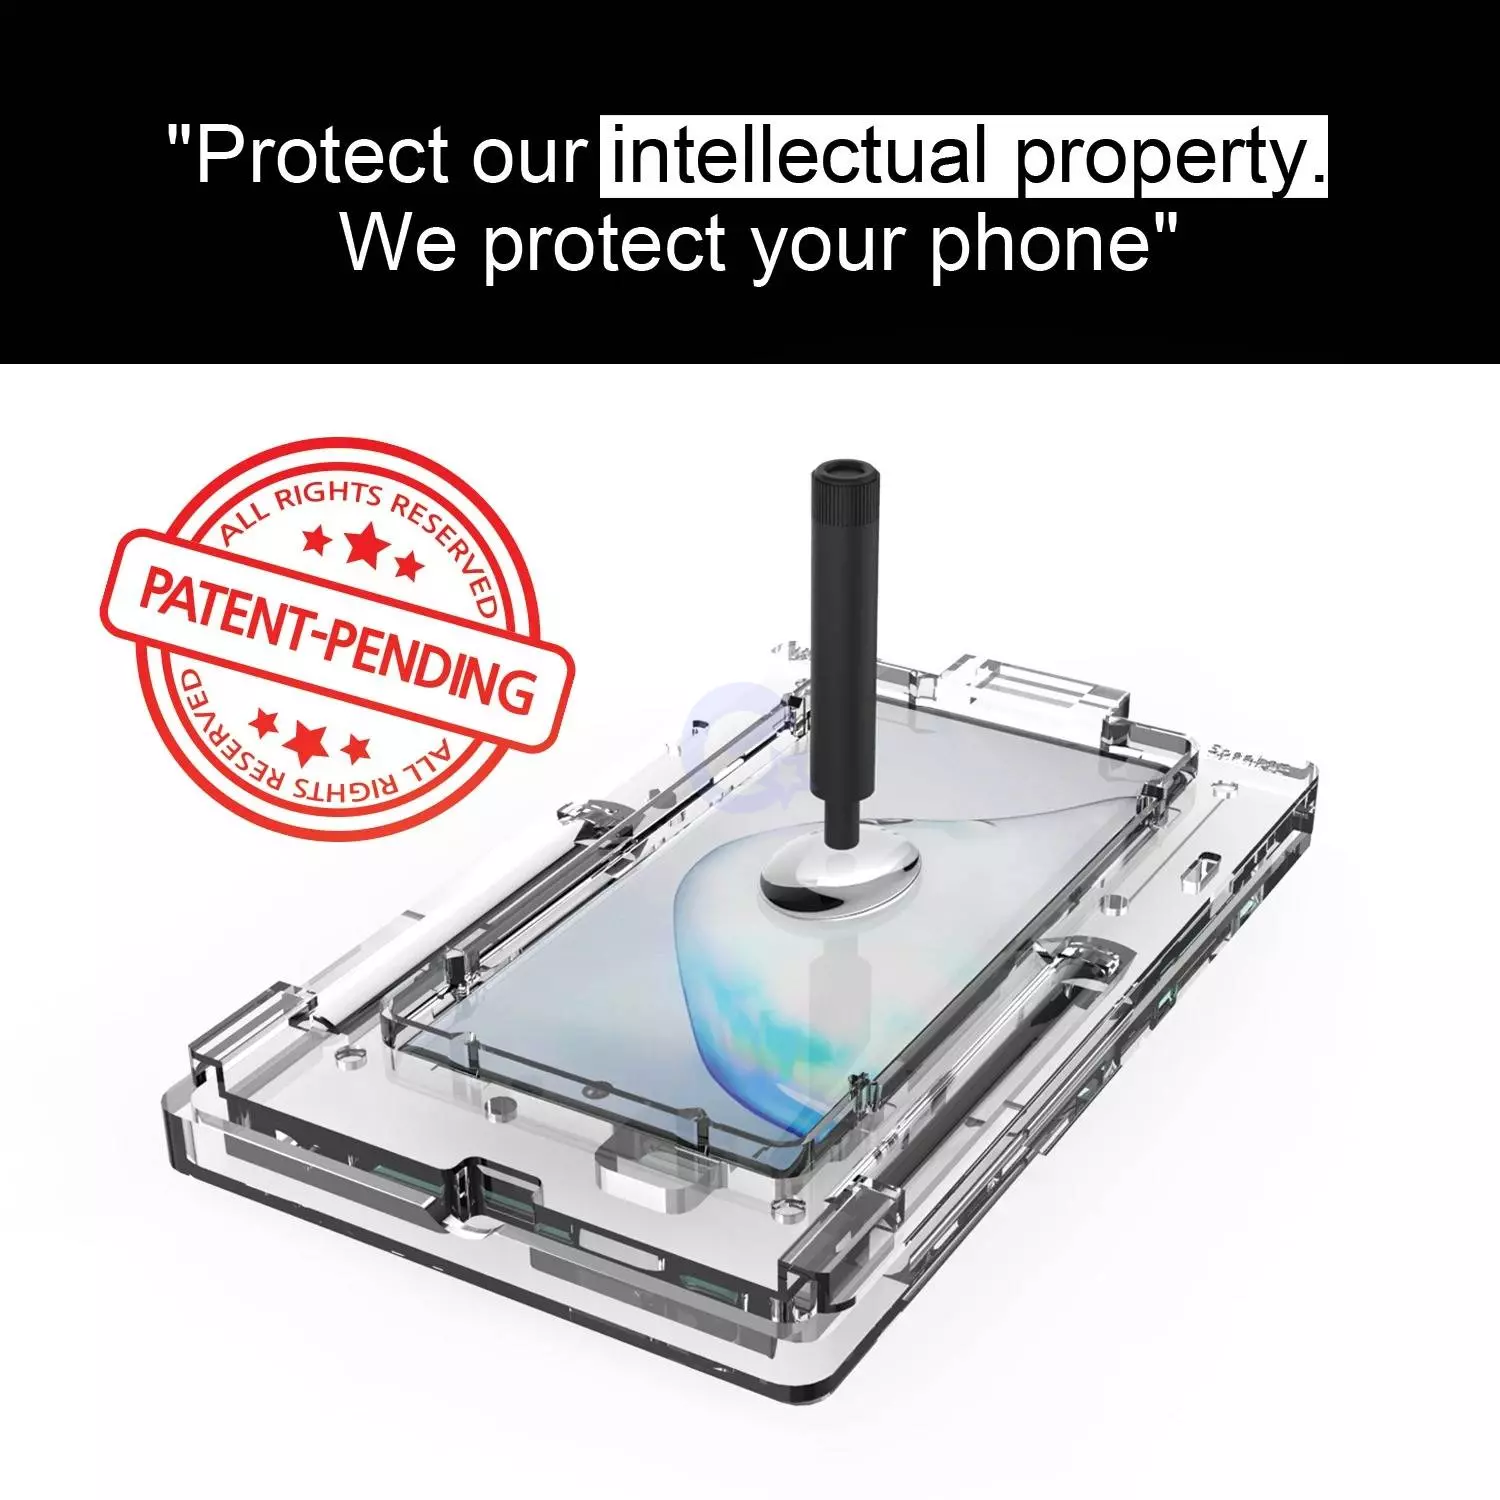 Защитное стекло Whitestone Dome Glass для Samsung Galaxy Note 10 (Комплектация с ультрафиолетовой лампой)